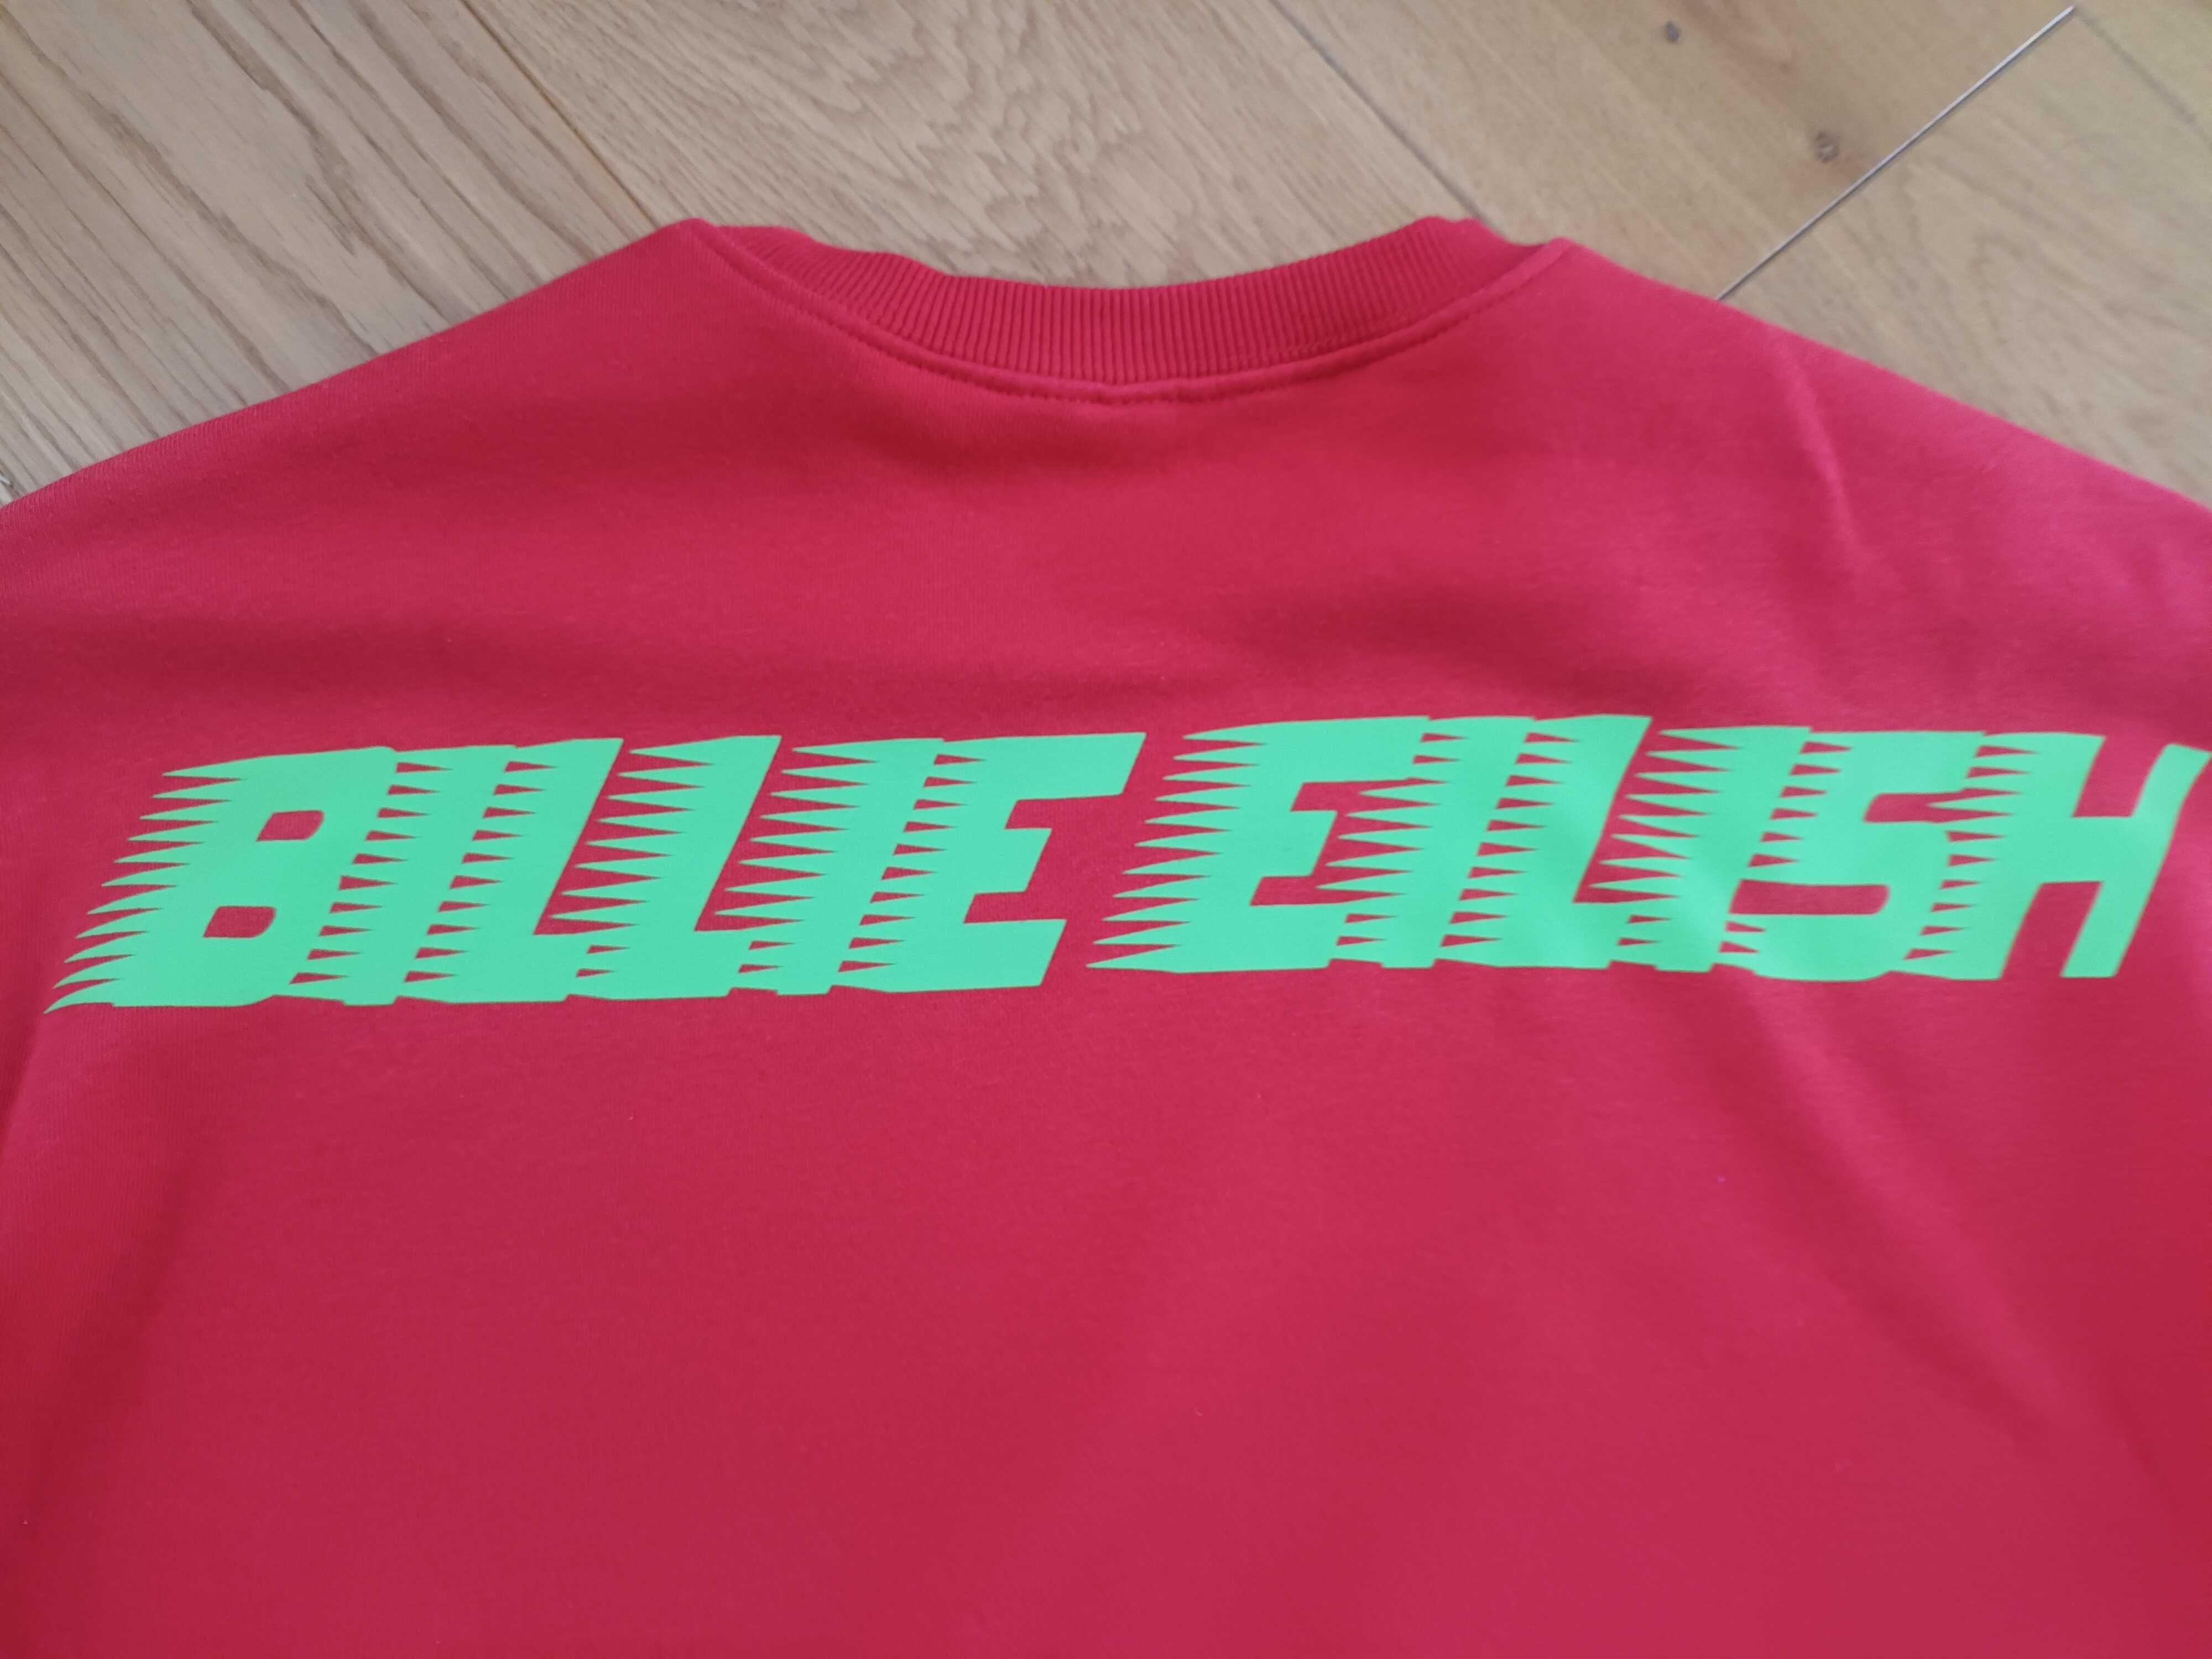 Bluza H&M Billie Eilish